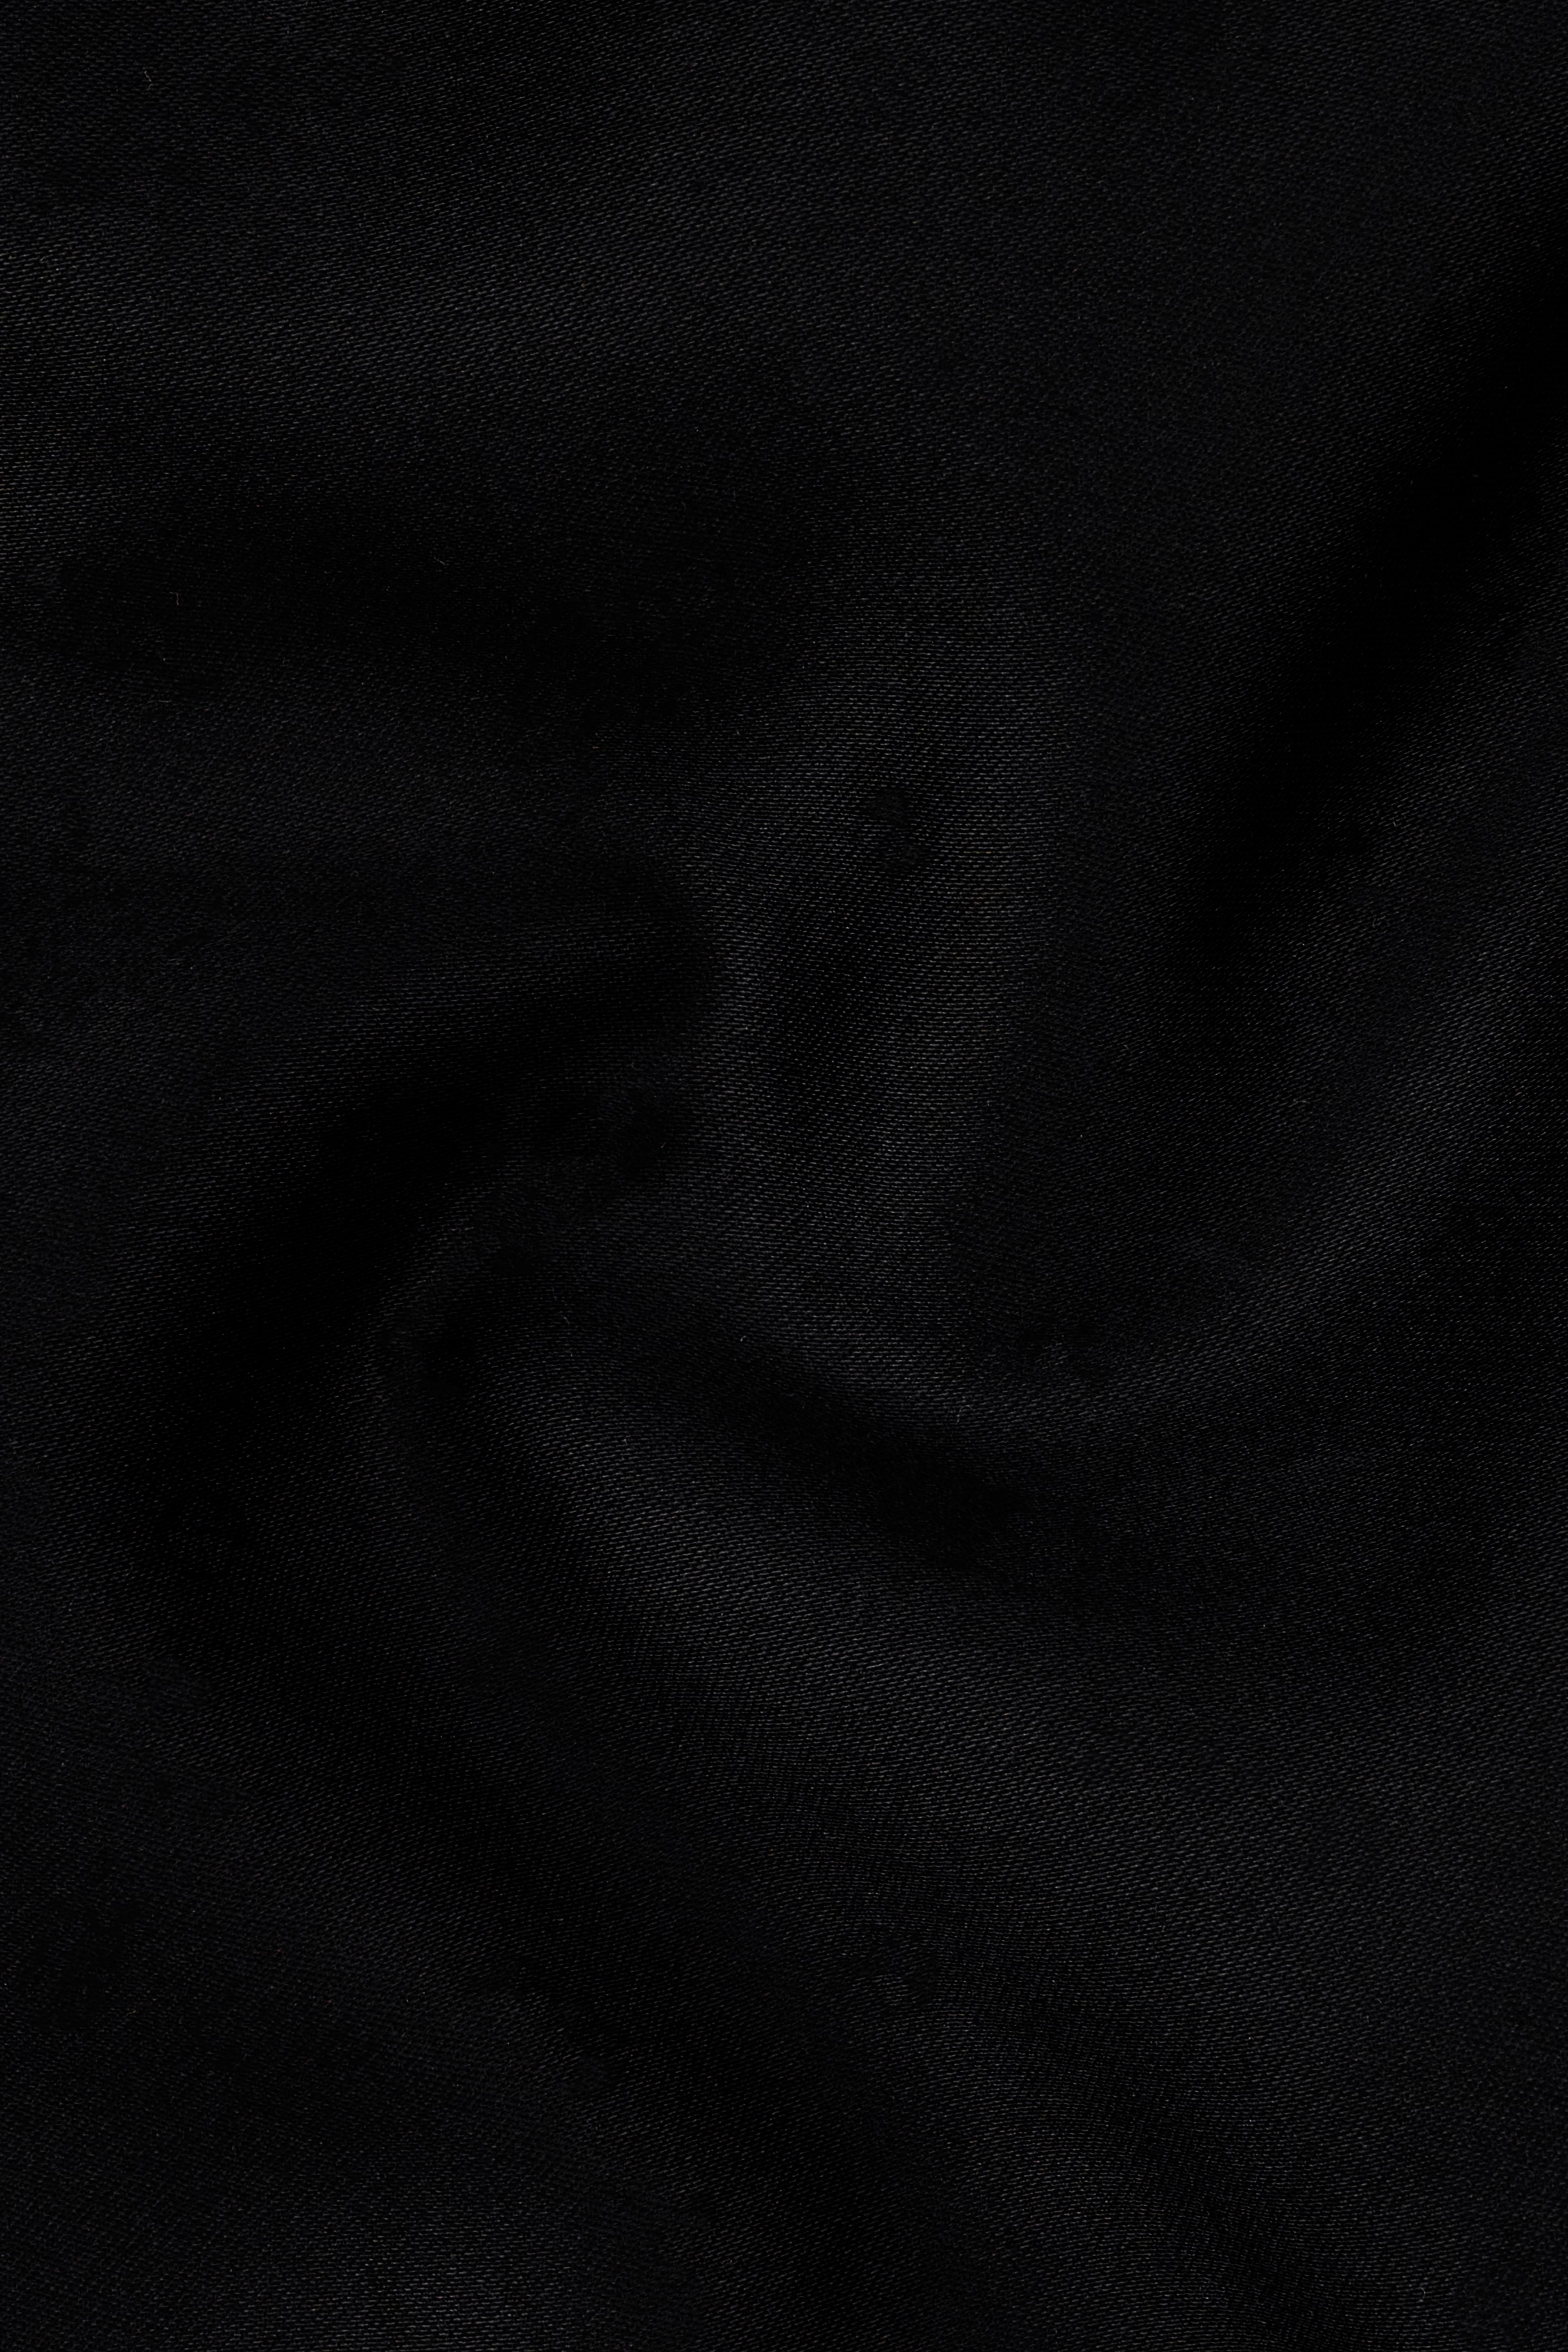 Jade Black Subtle Sheen Bandhgala/Mandarin Wool blend Suit